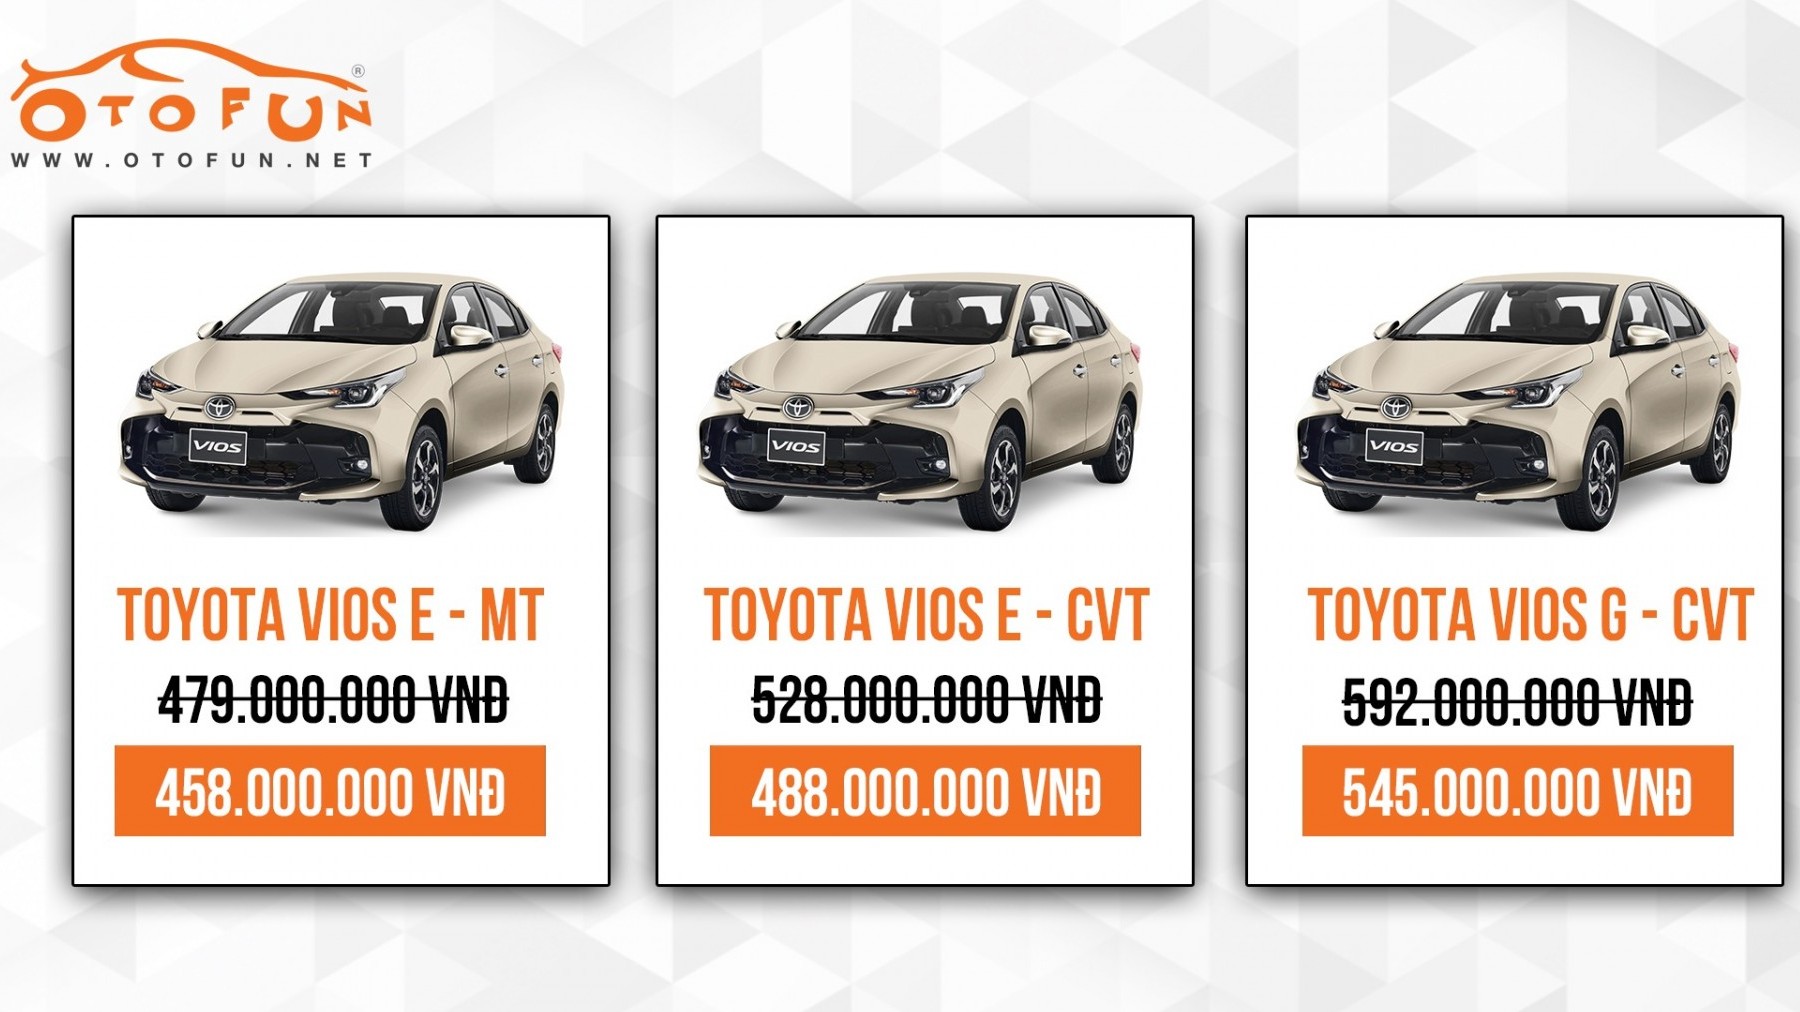 Sedan quốc dân Toyota Vios giảm giá, điều gì đang xảy ra?